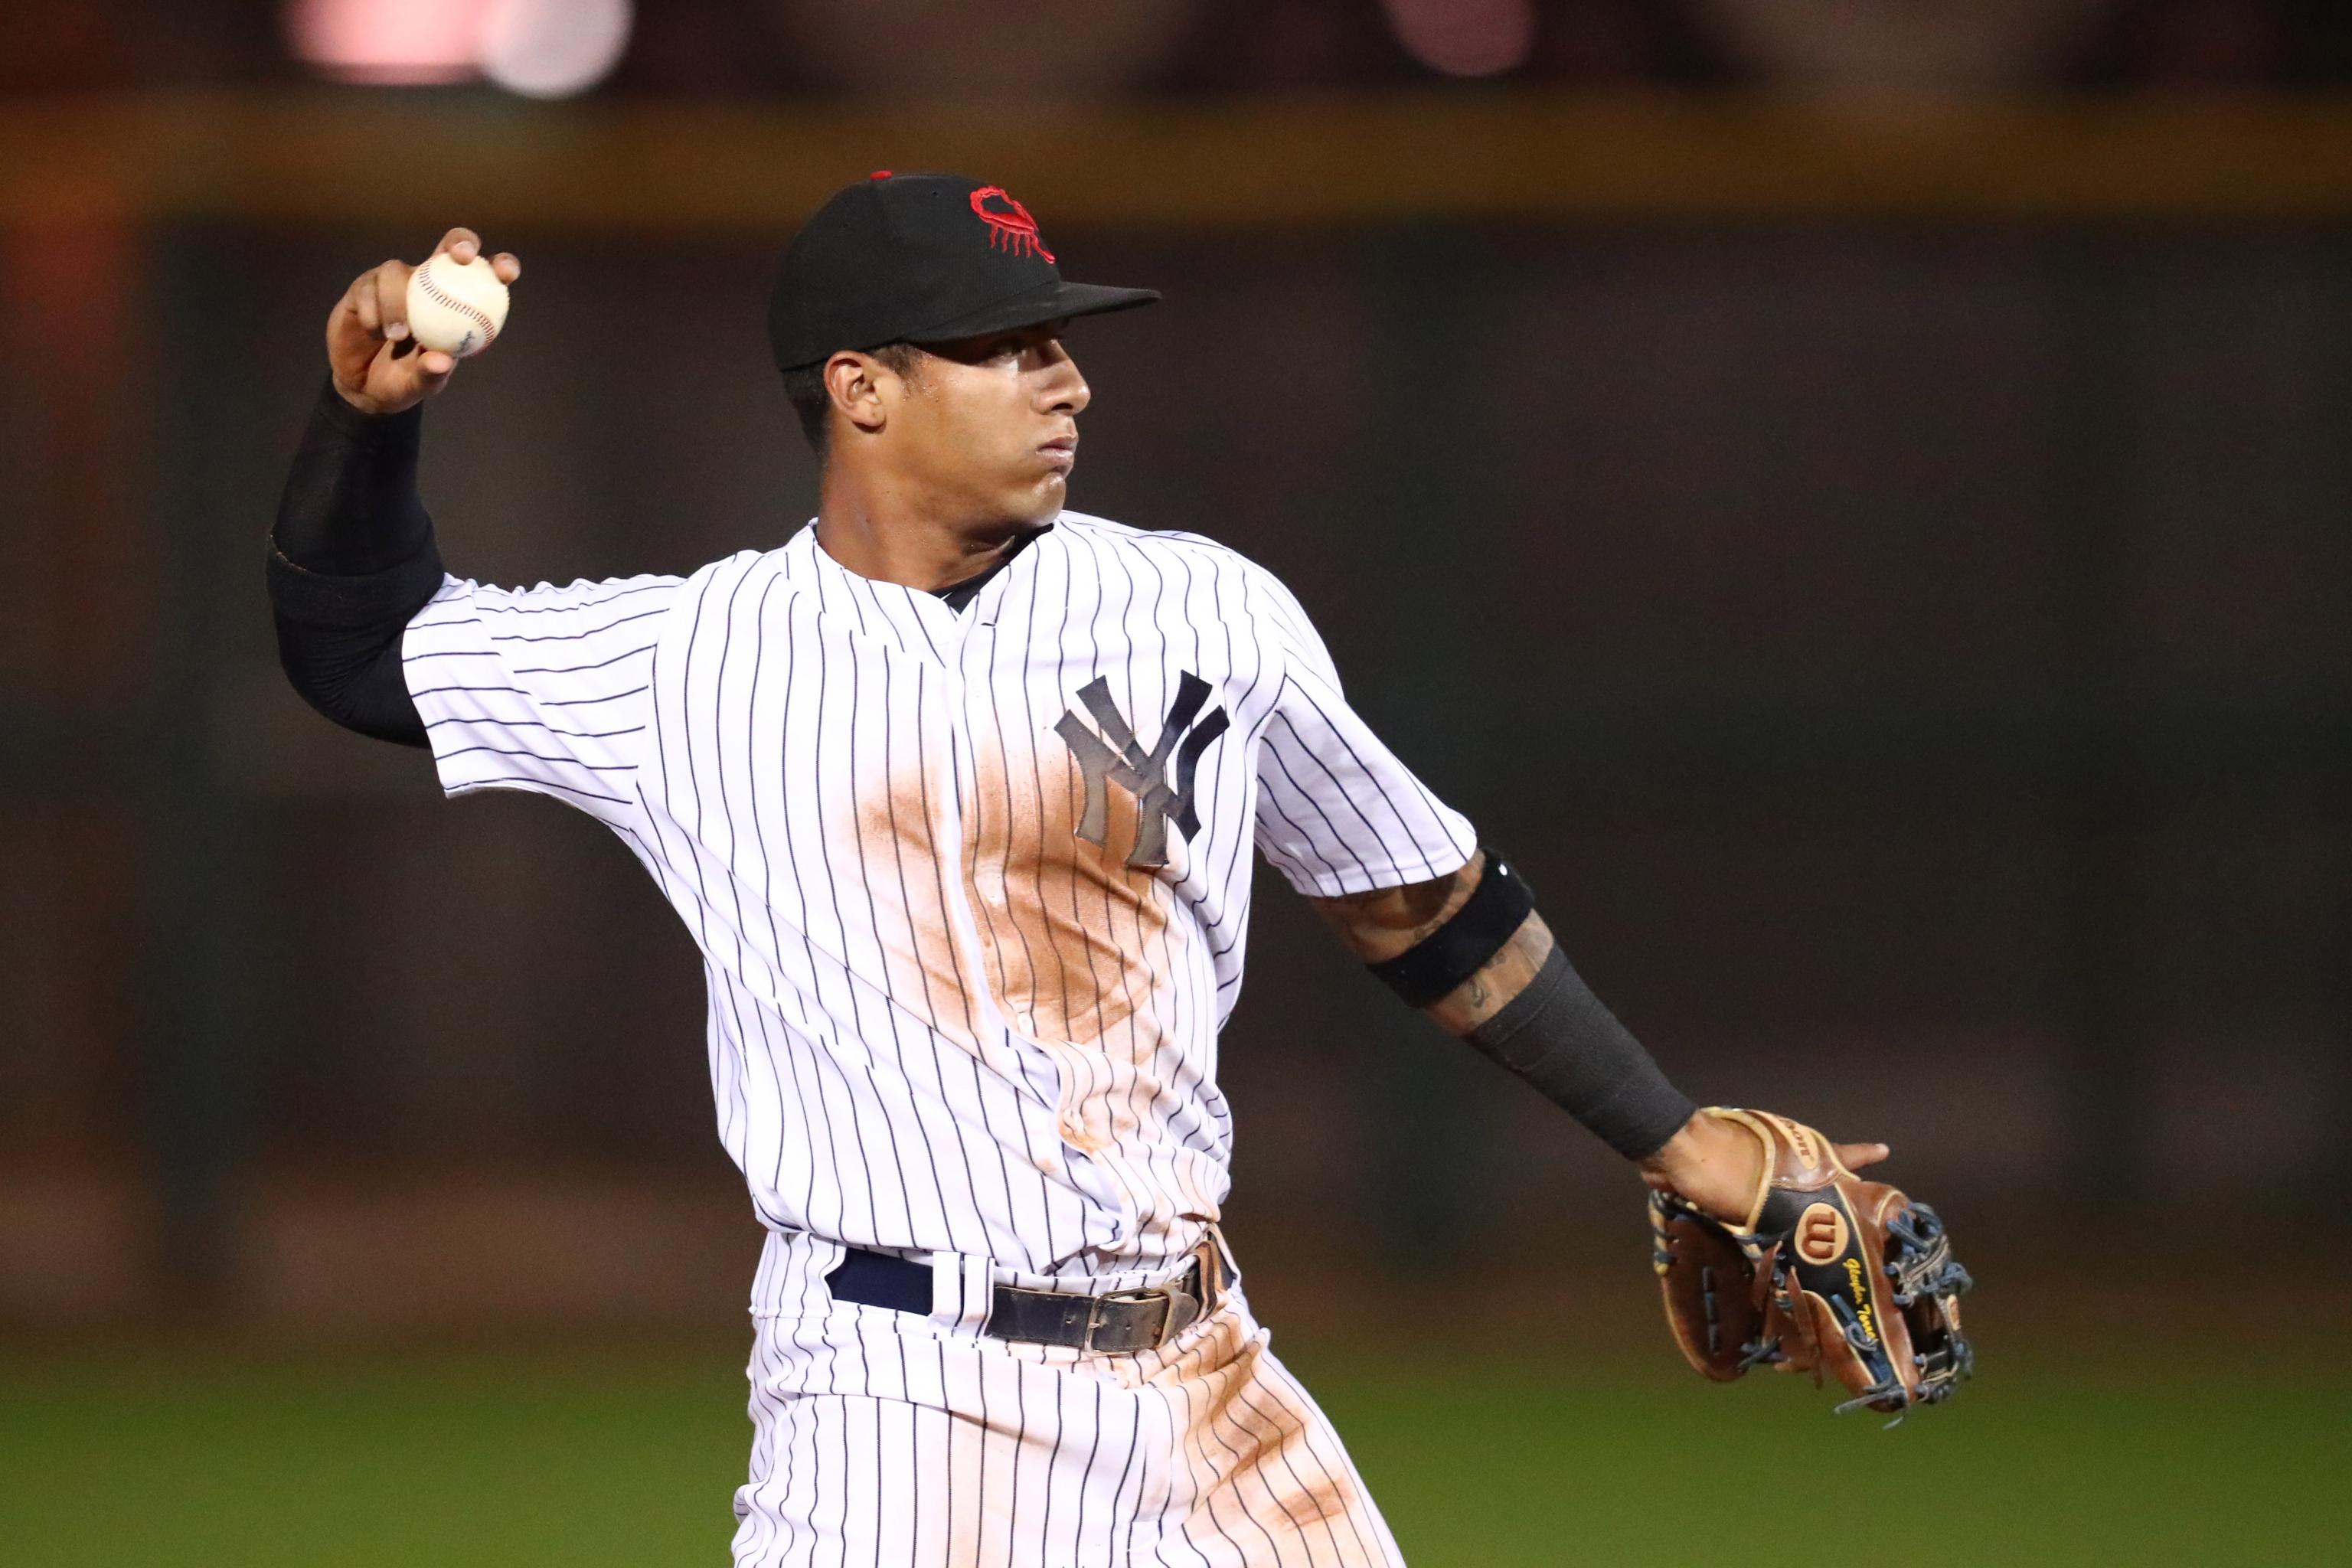 New York Yankees' 21-Year-Old Derek Jeter-Like Prospect Reveals